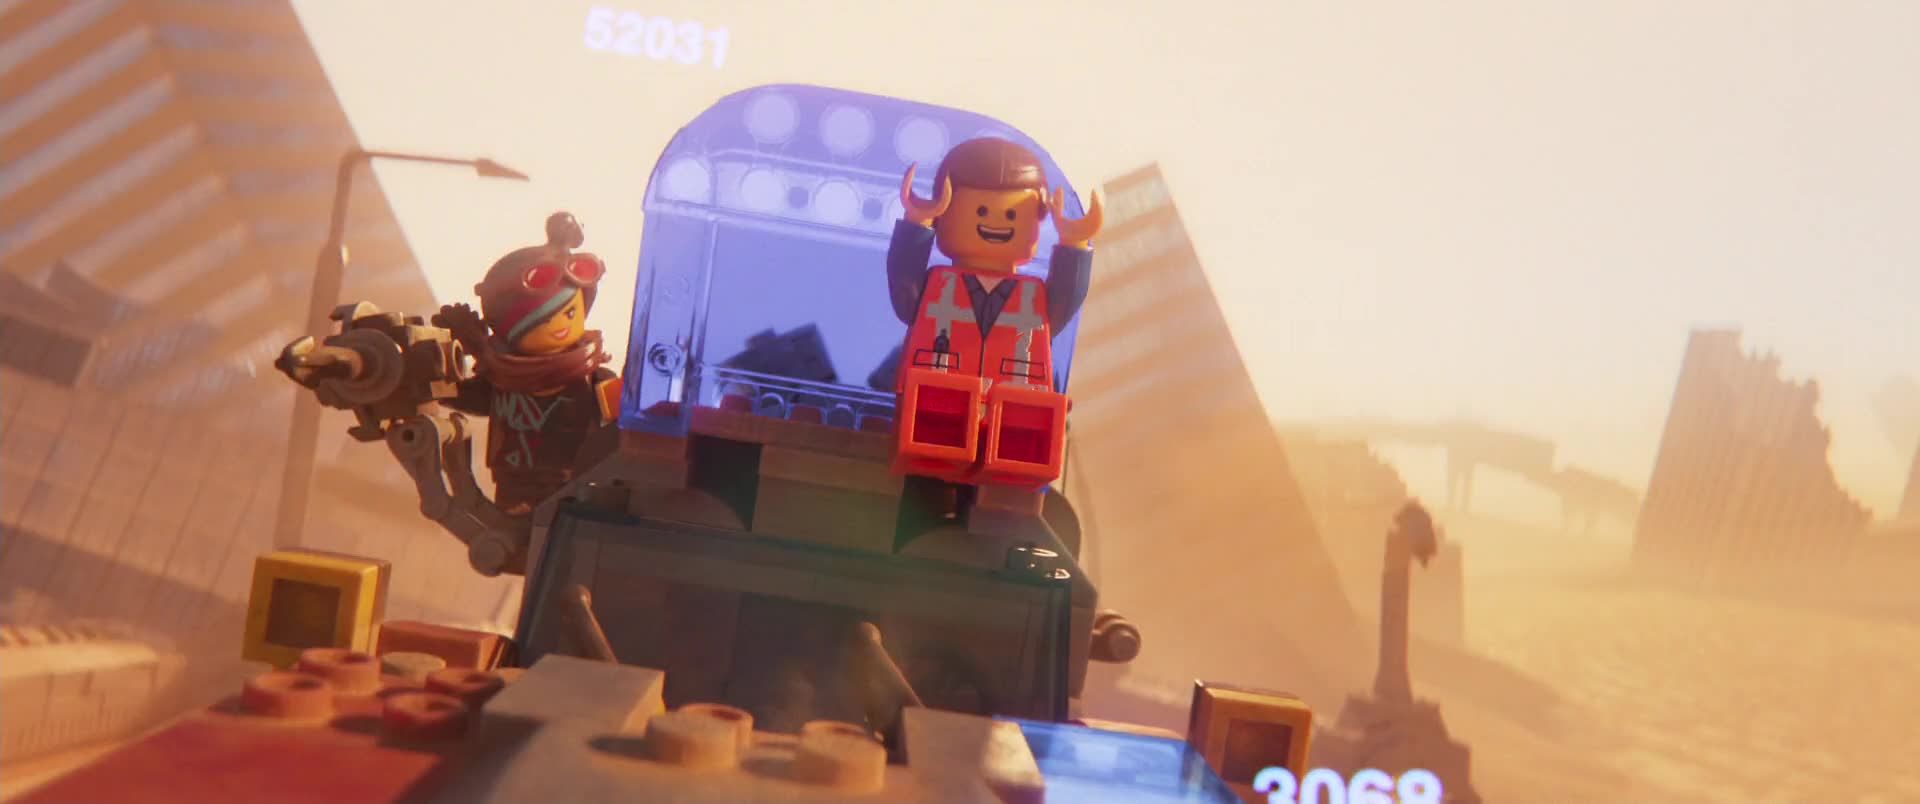 LEGO pribeh 2 2019 SK dabing HD 1080p